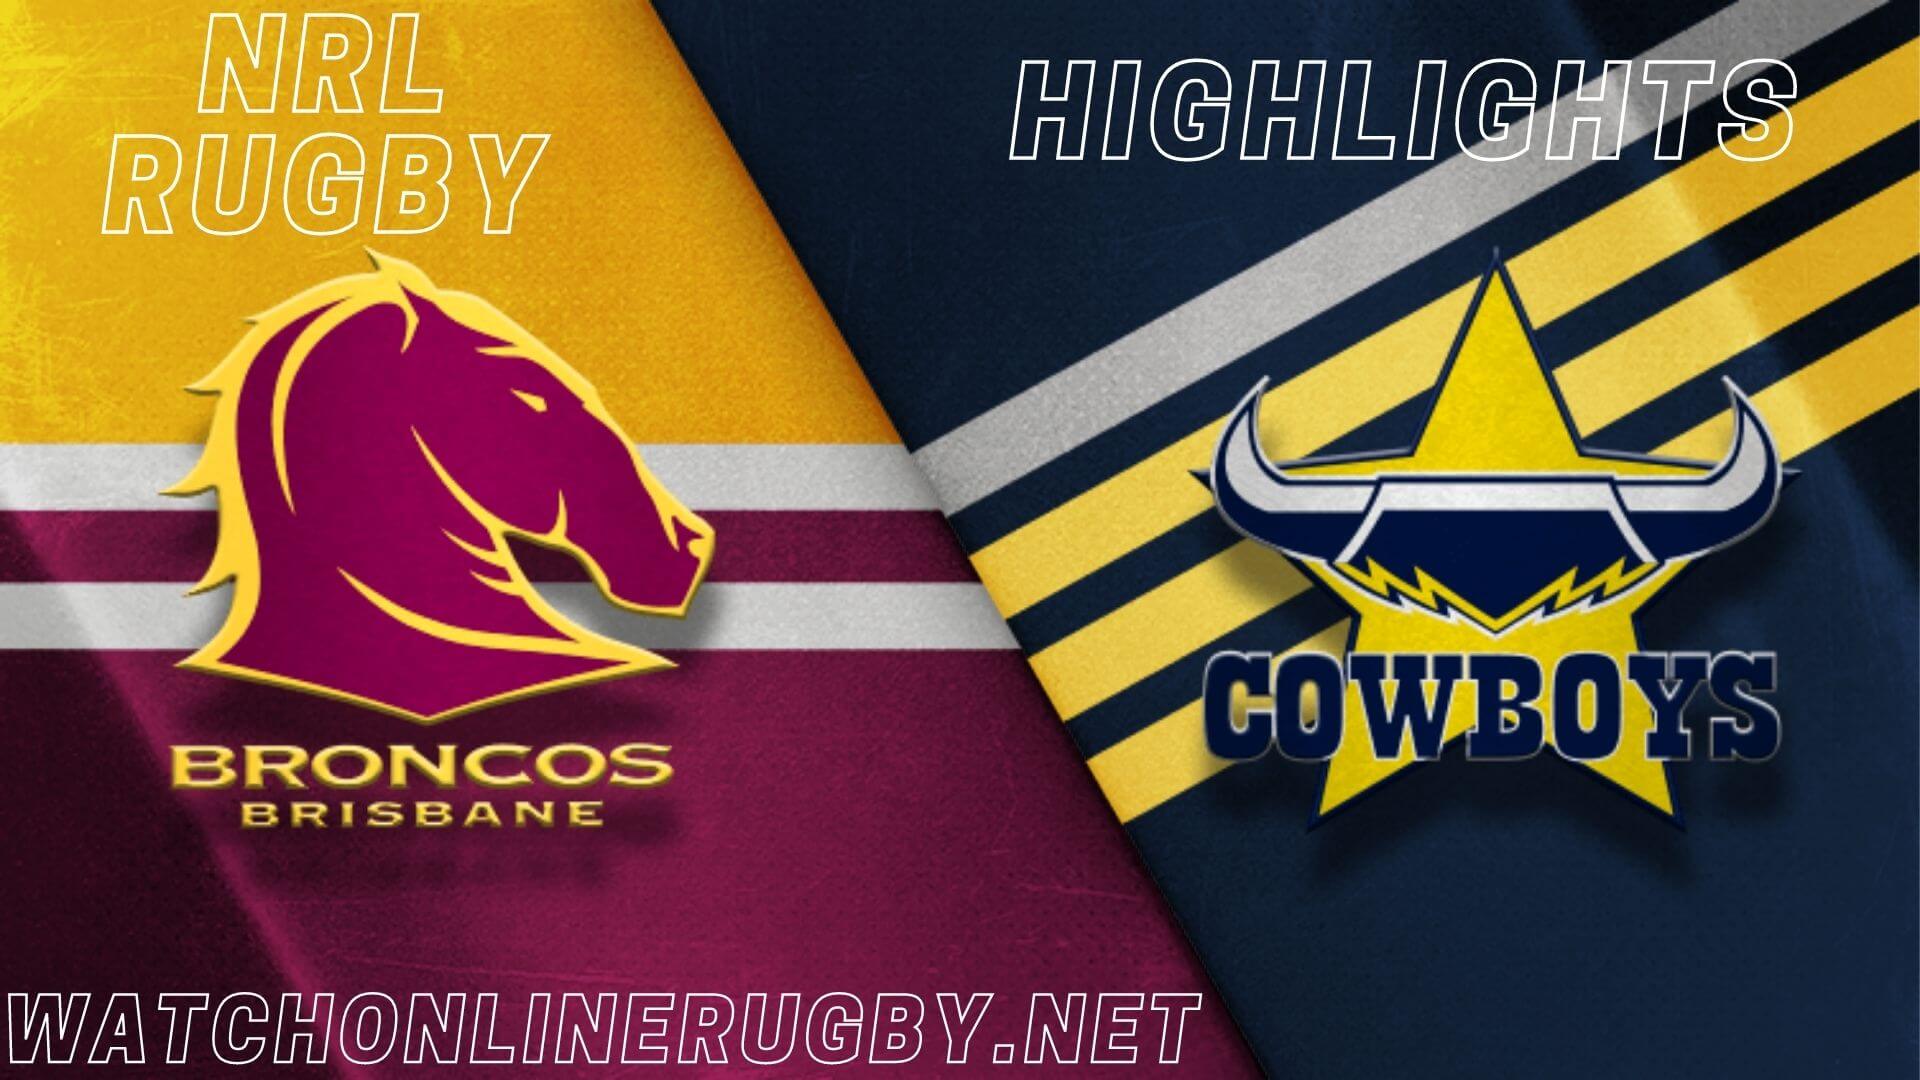 Broncos Vs Cowboys Highlights RD 3 NRL Rugby